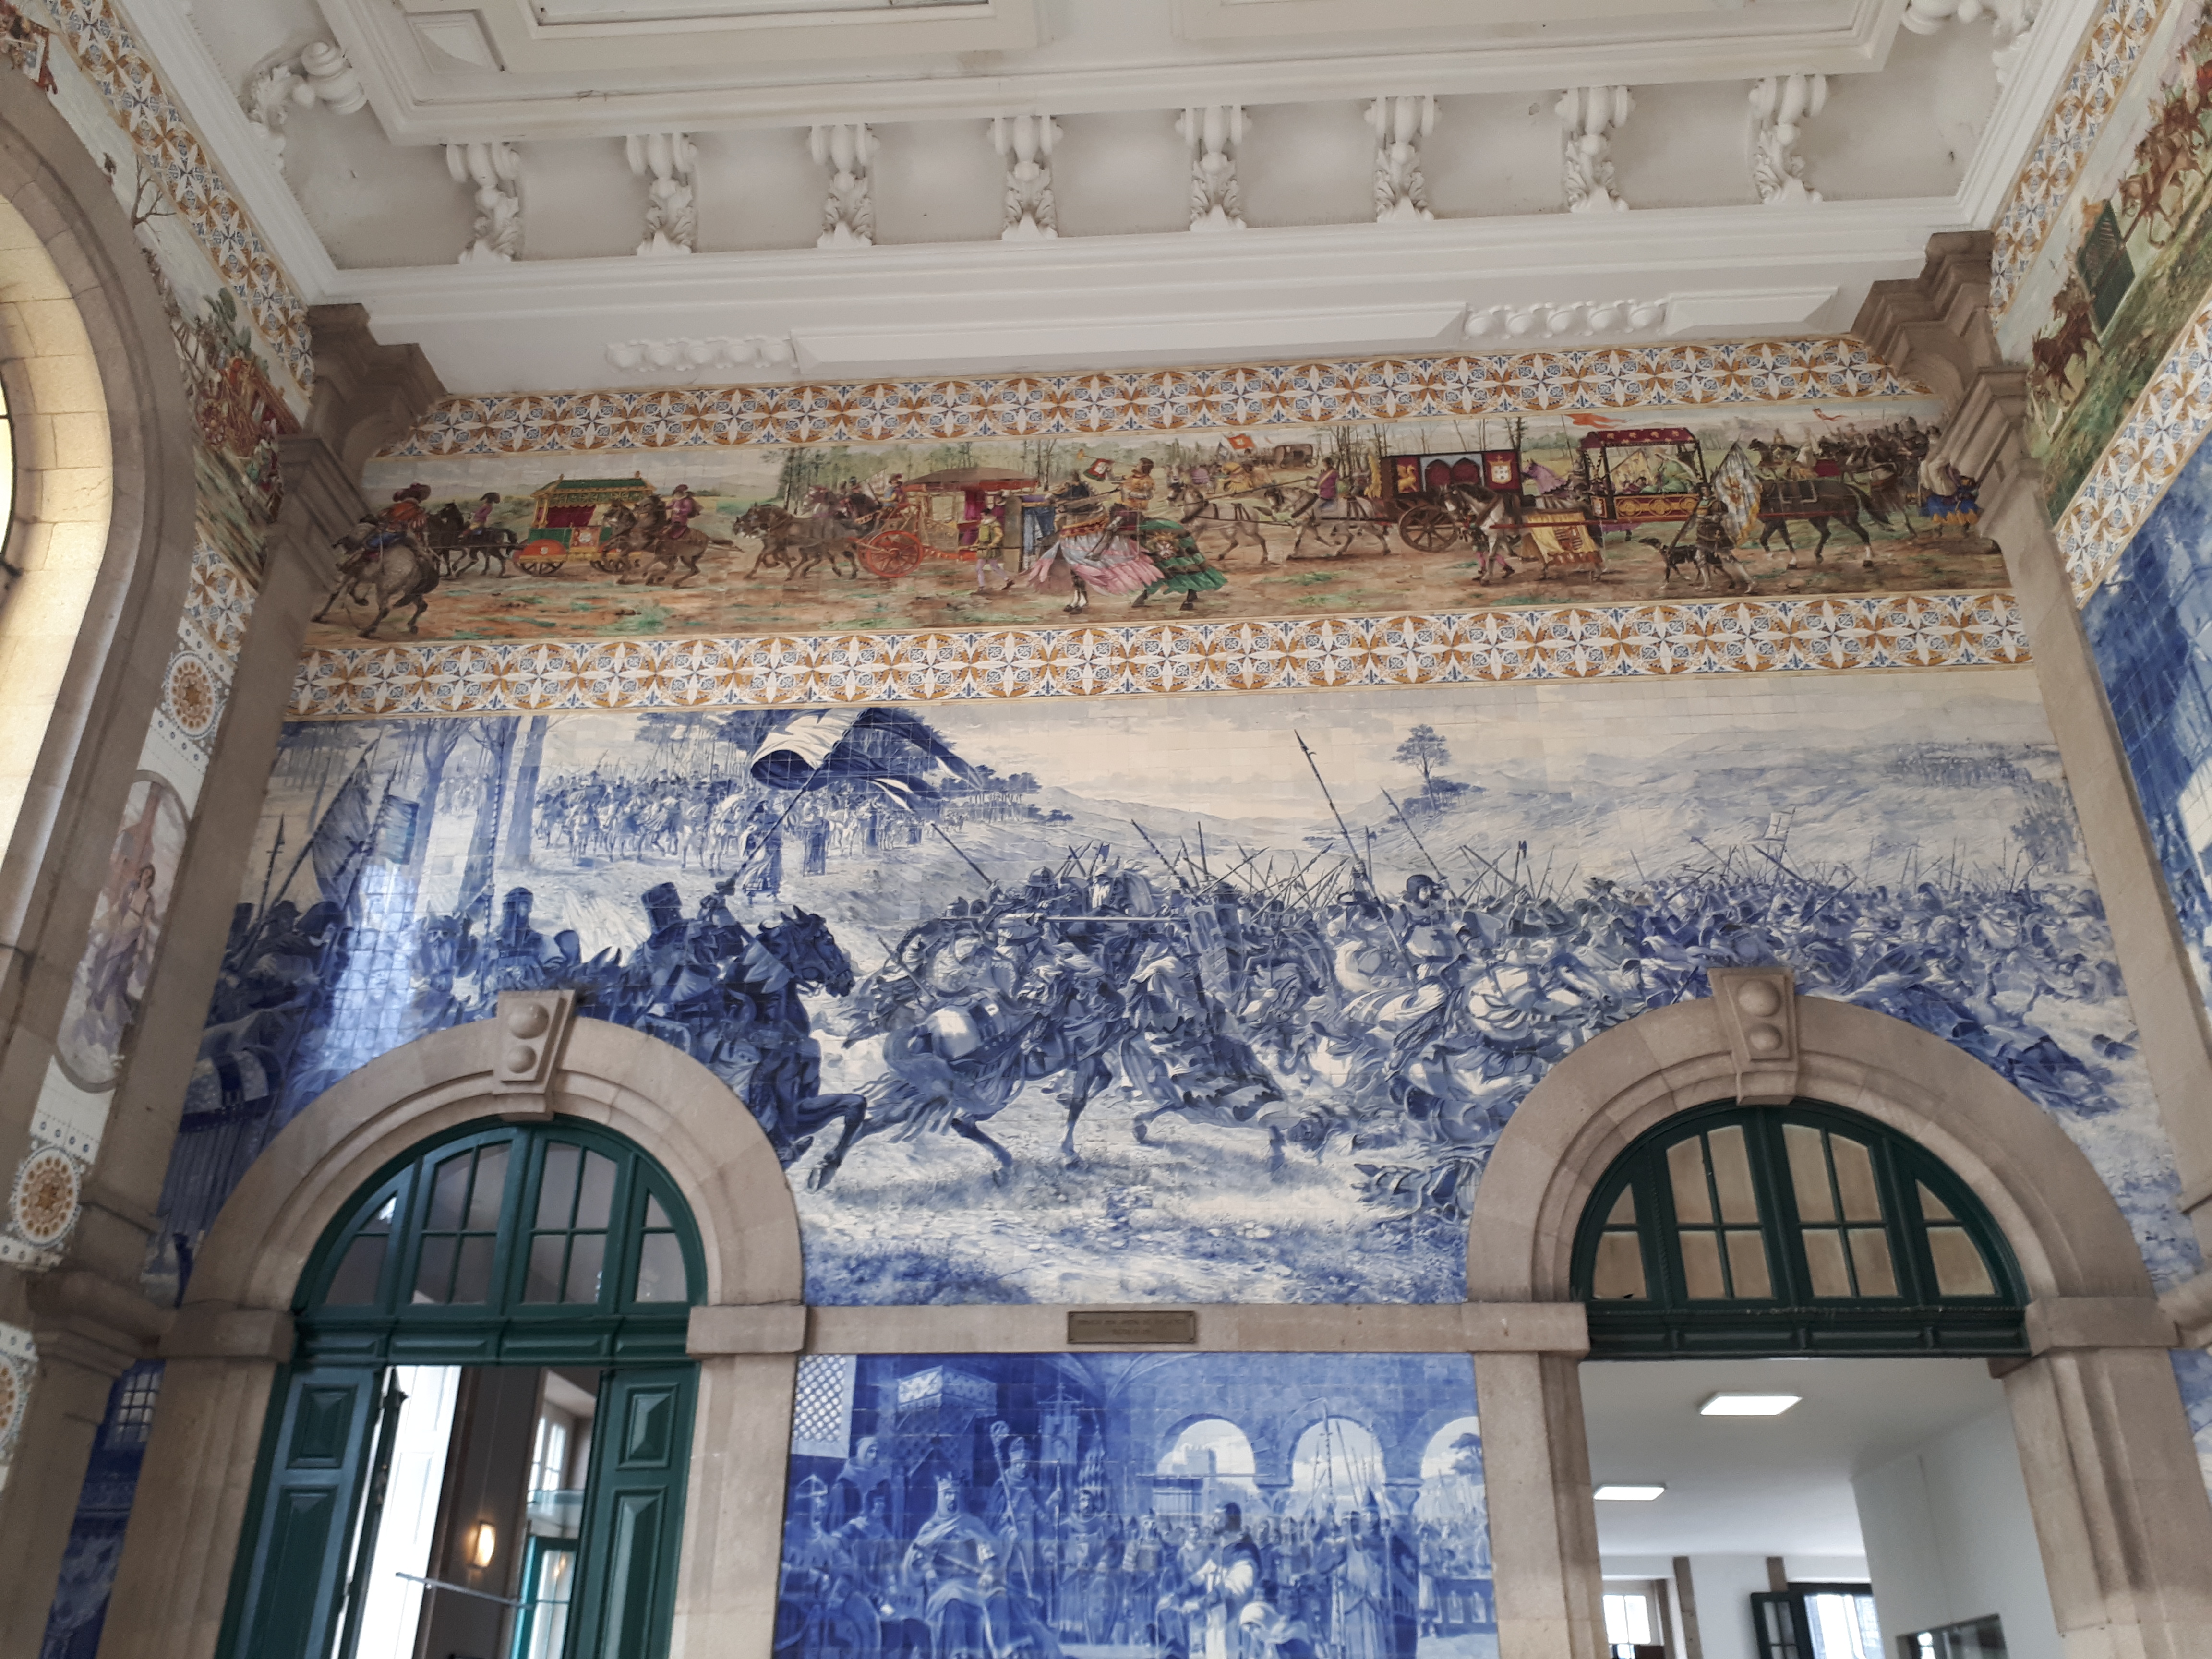 Entrada de una estación de trenes cuya pared está repleta de azulejos.